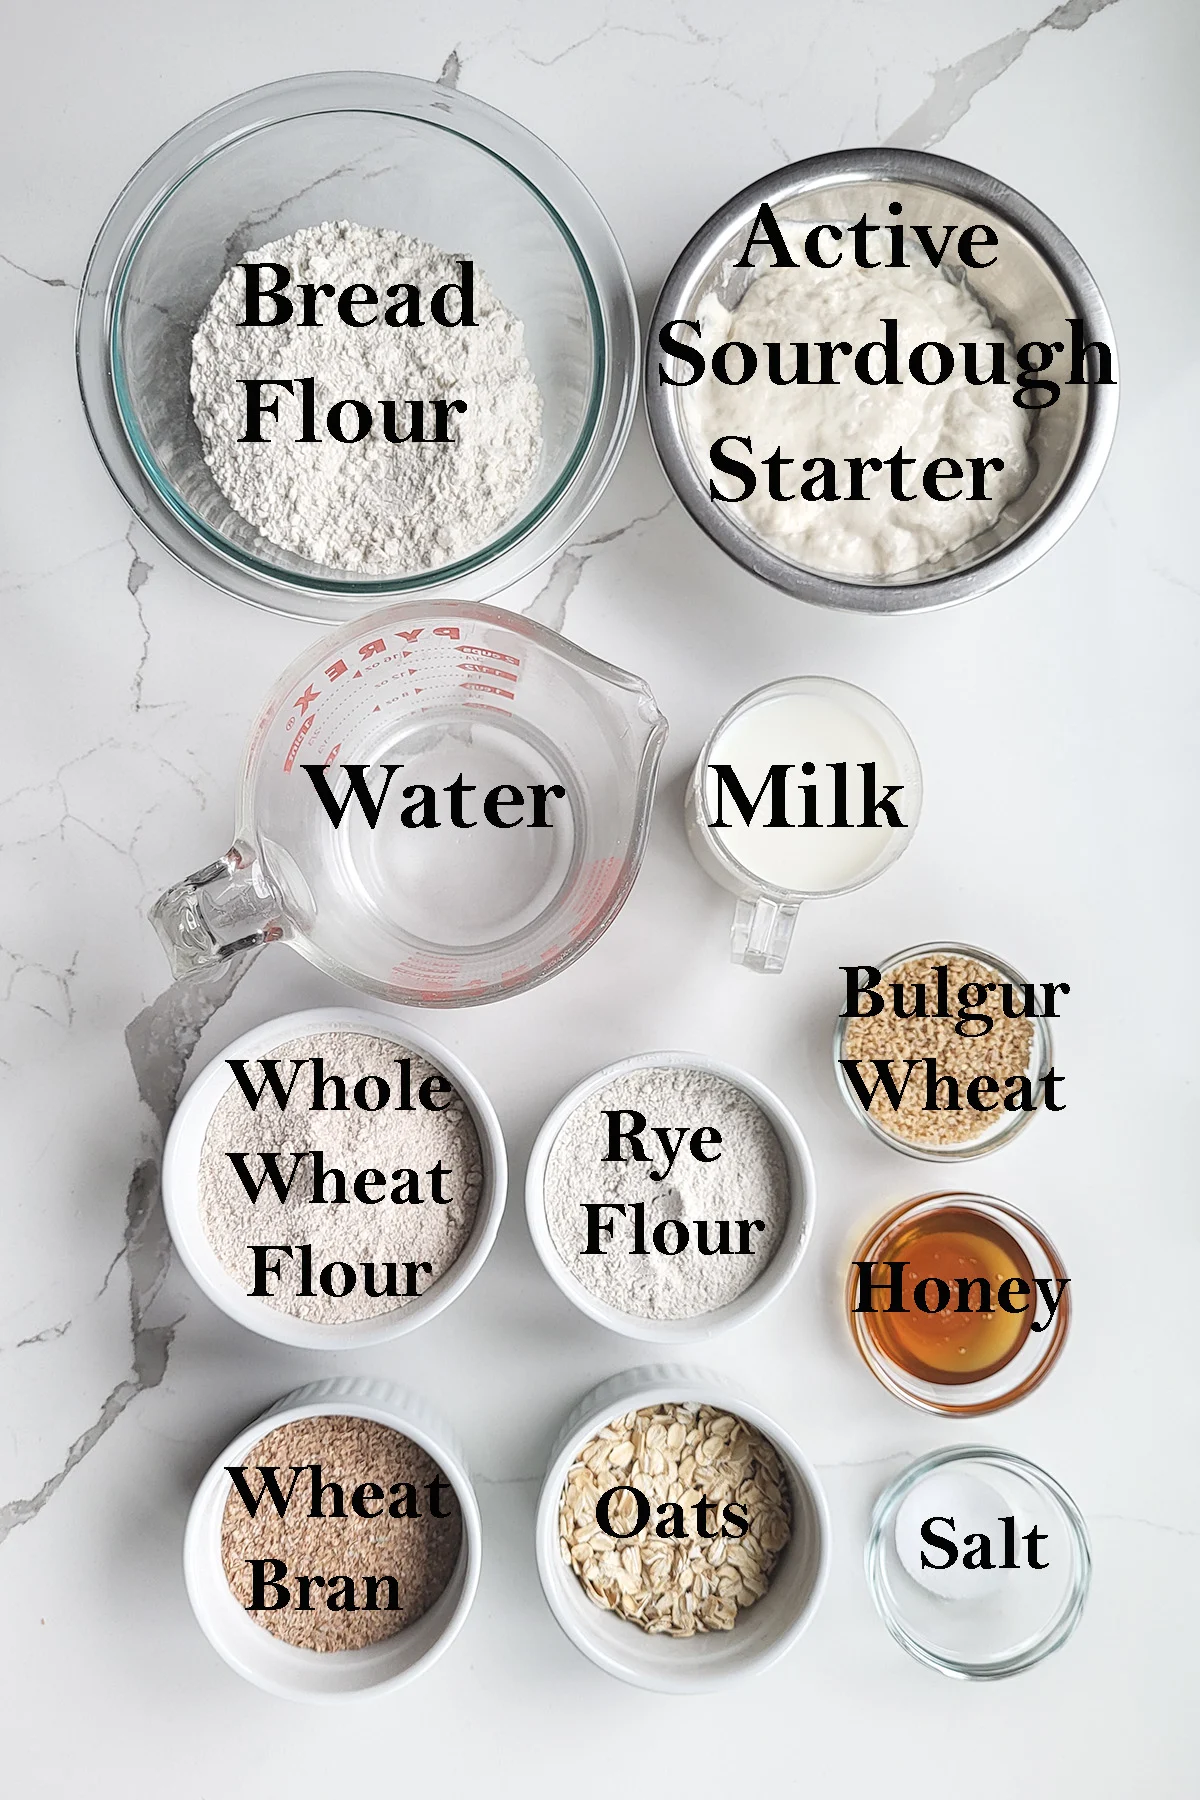 ingredients for sourdough multigrain bread arranged in bowls.